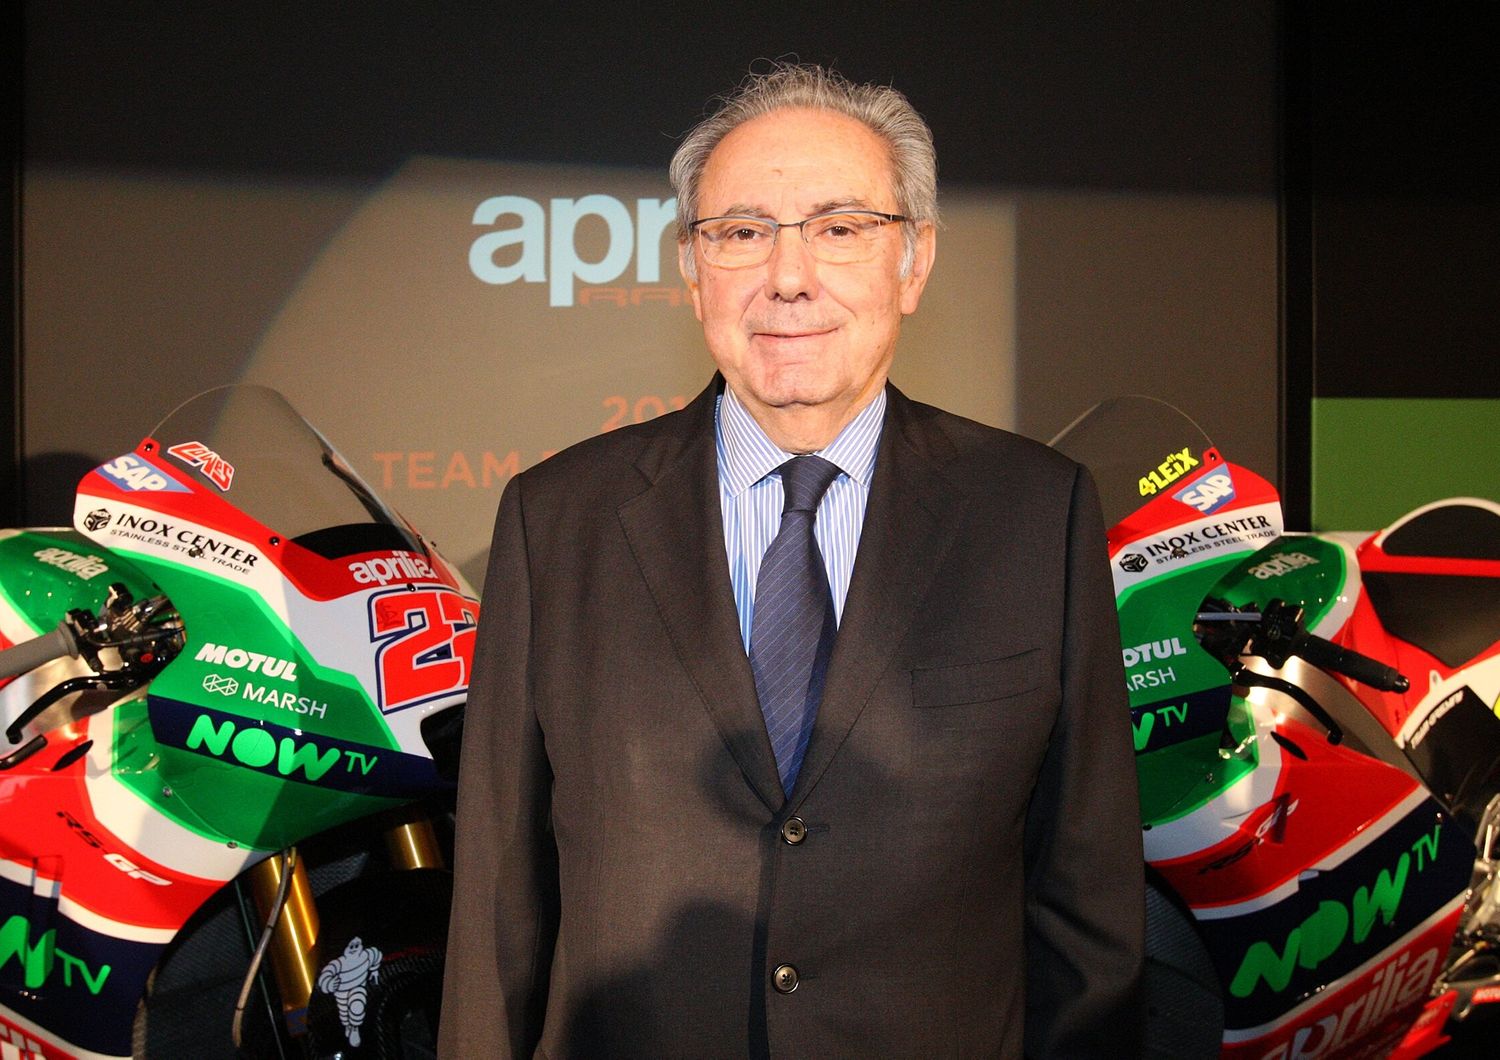 Presentazione nuova Aprilia Racing Moto GP 2017 - L'AD Roberto Colannino